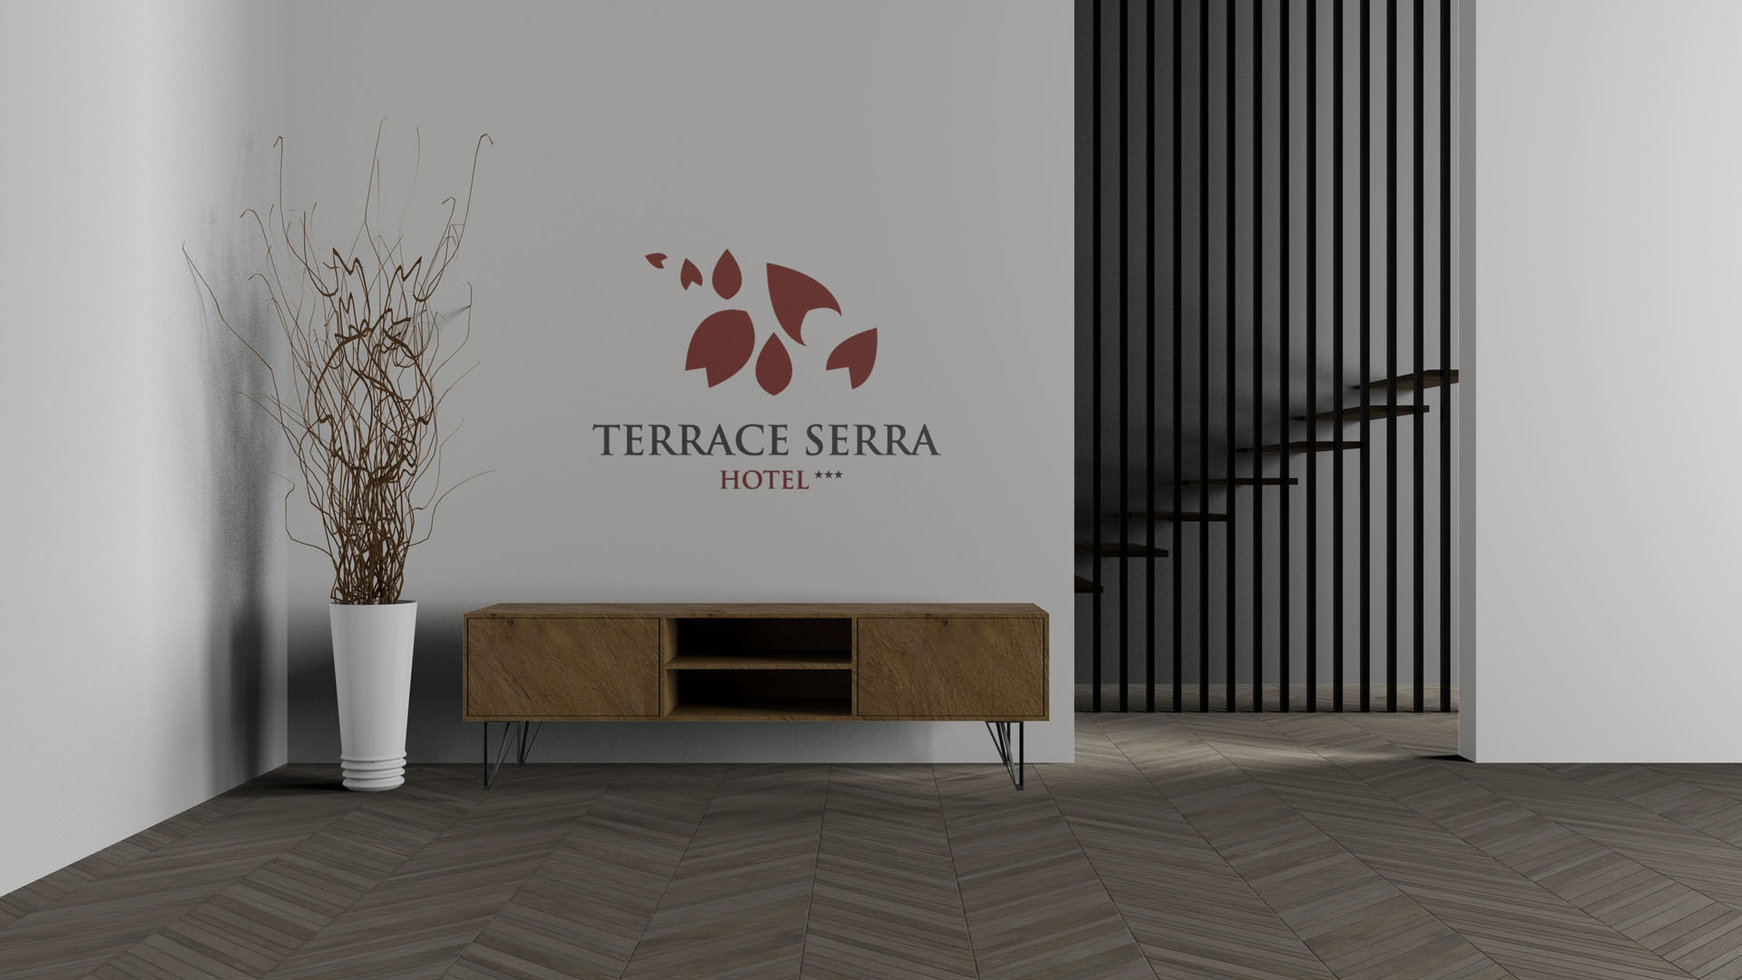 Terrace Serra